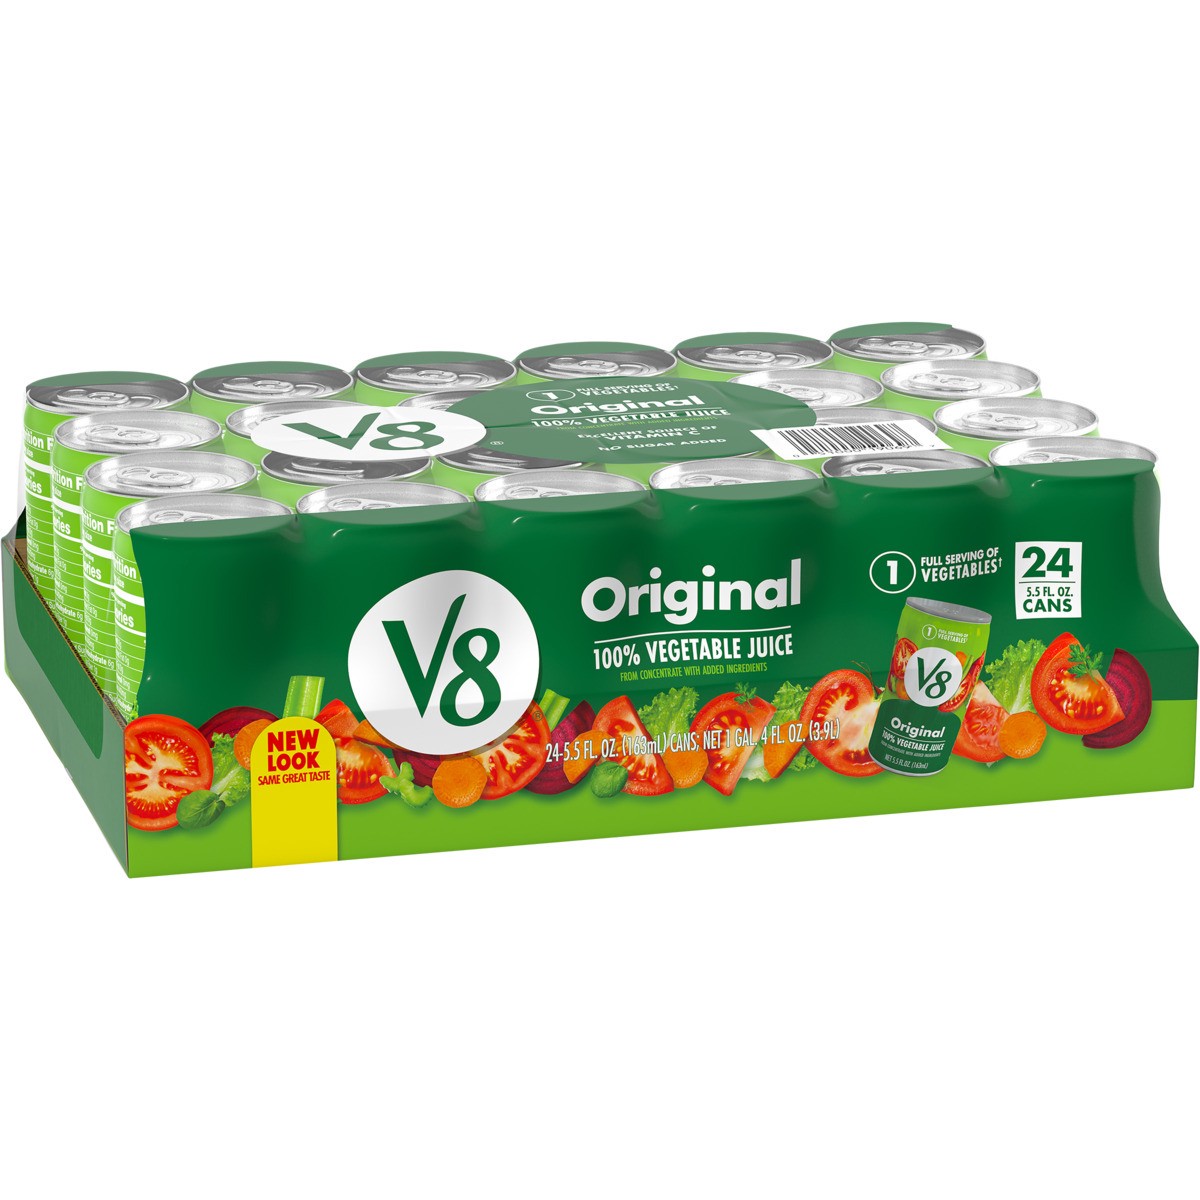 slide 2 of 11, V8 Original 100% Vegetable Juice, 5.5 fl oz Can (24 Pack), 132 oz